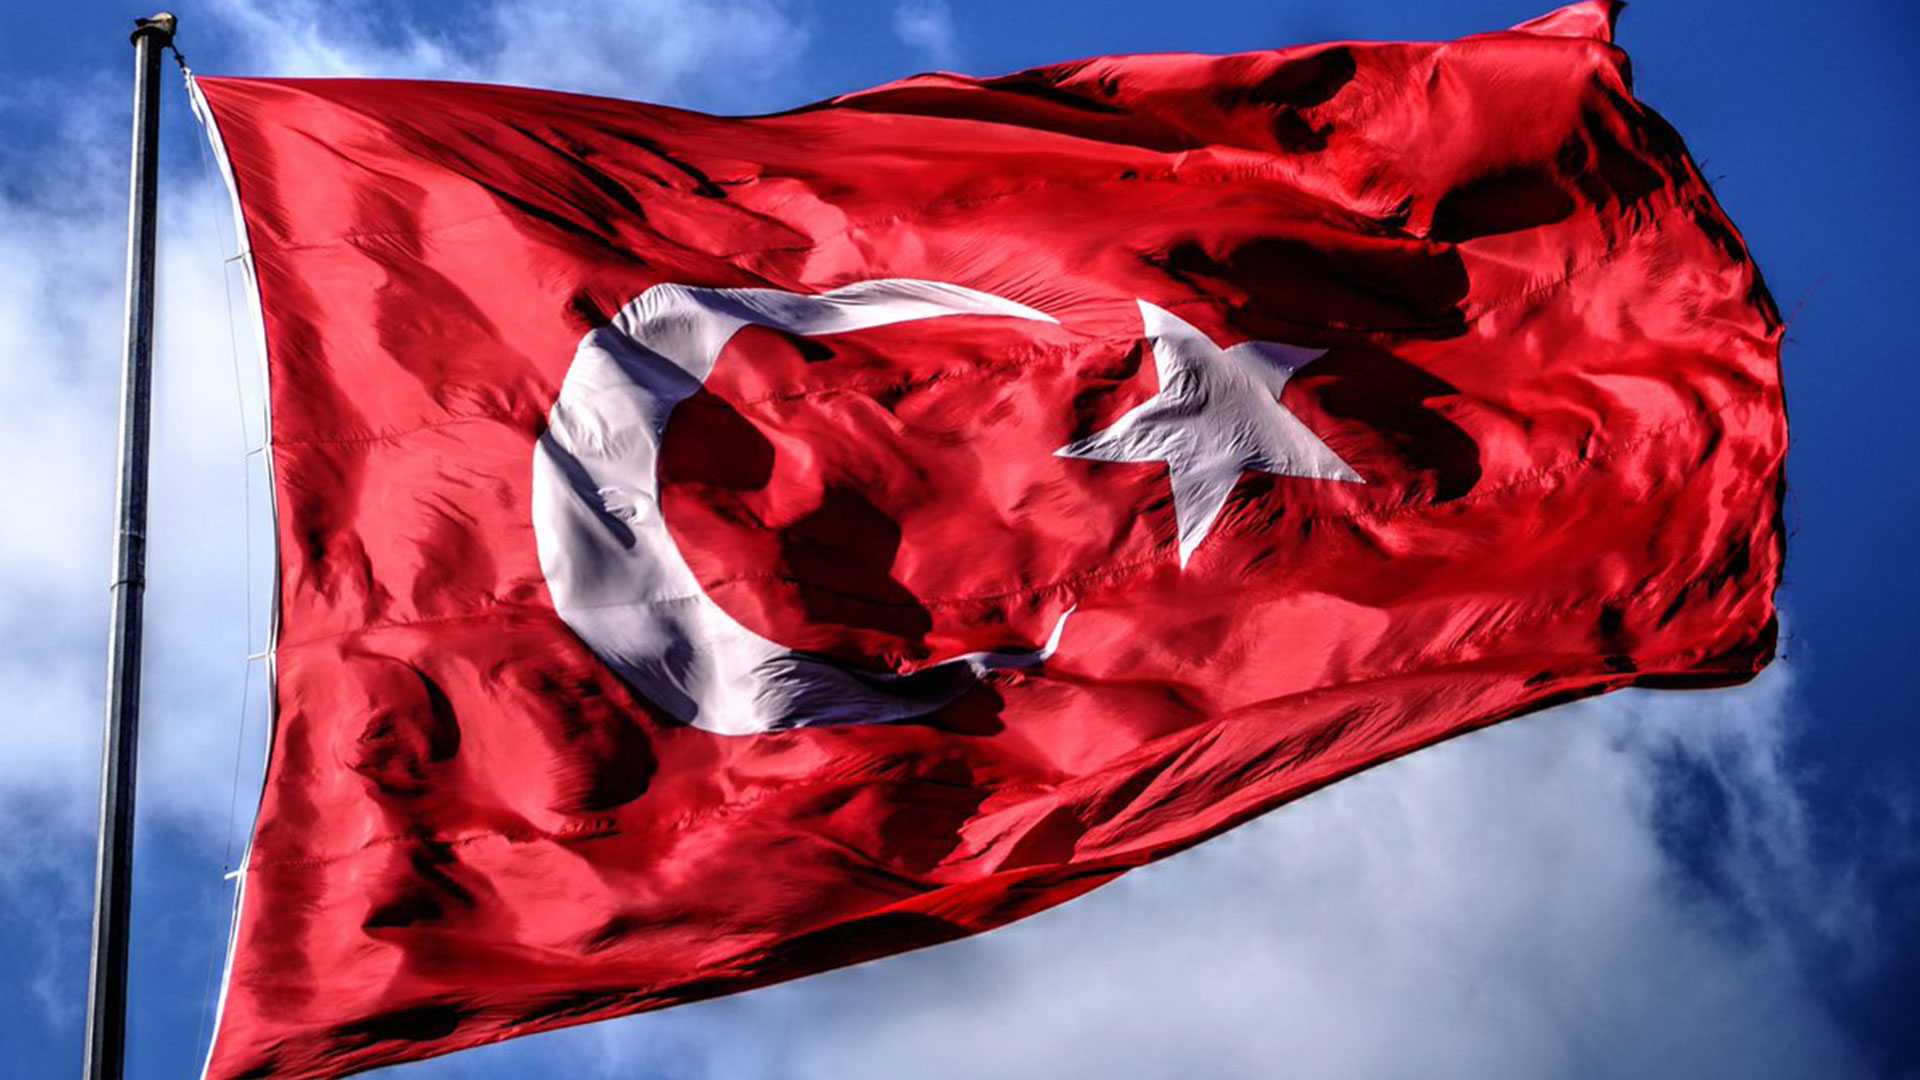 turk bayragi resimleri 2020 17